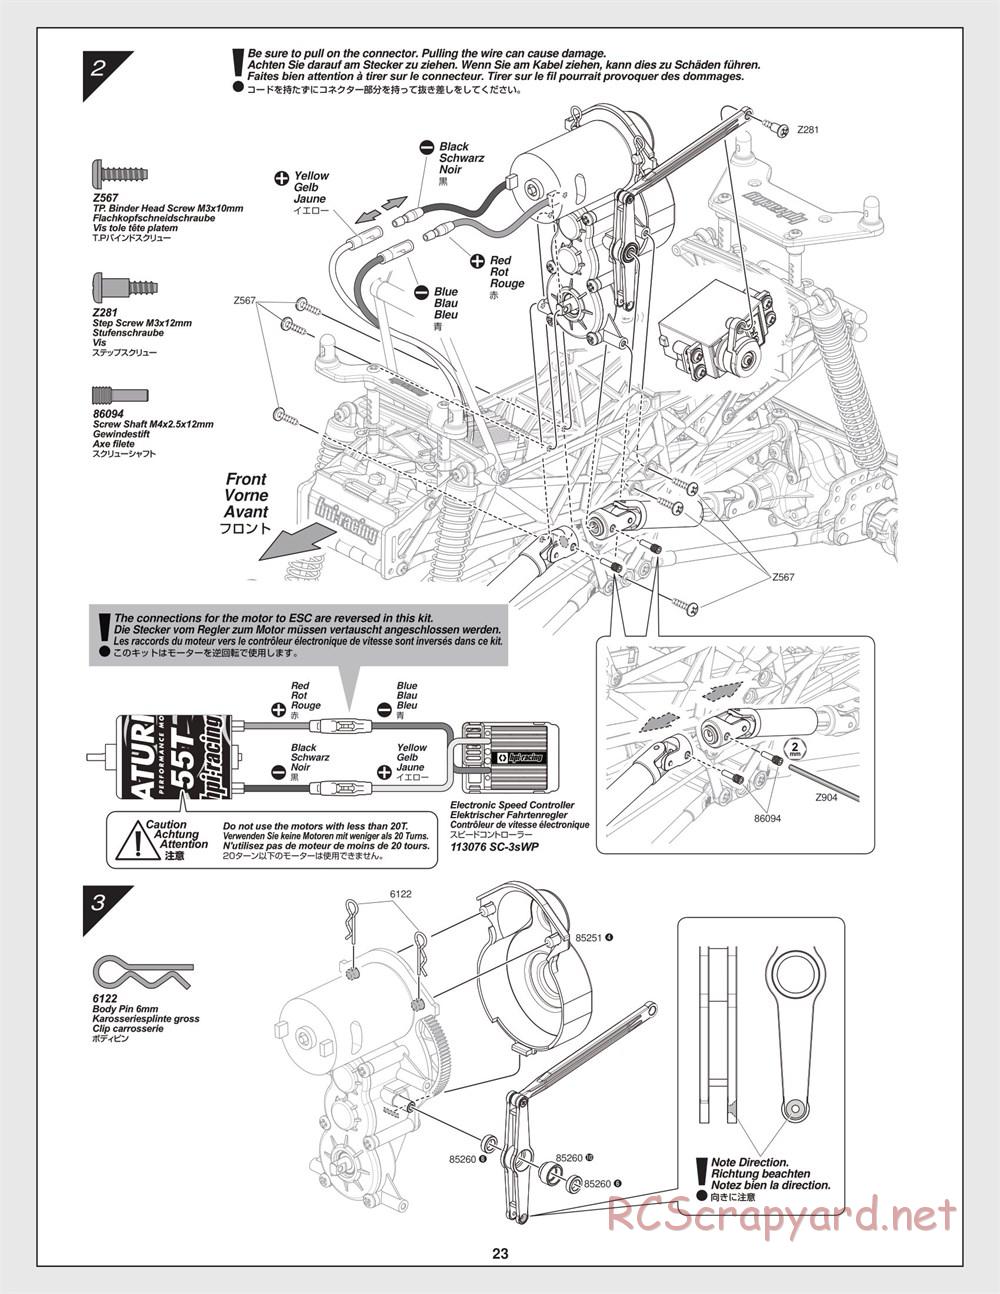 HPI - Crawler King - Manual - Page 23